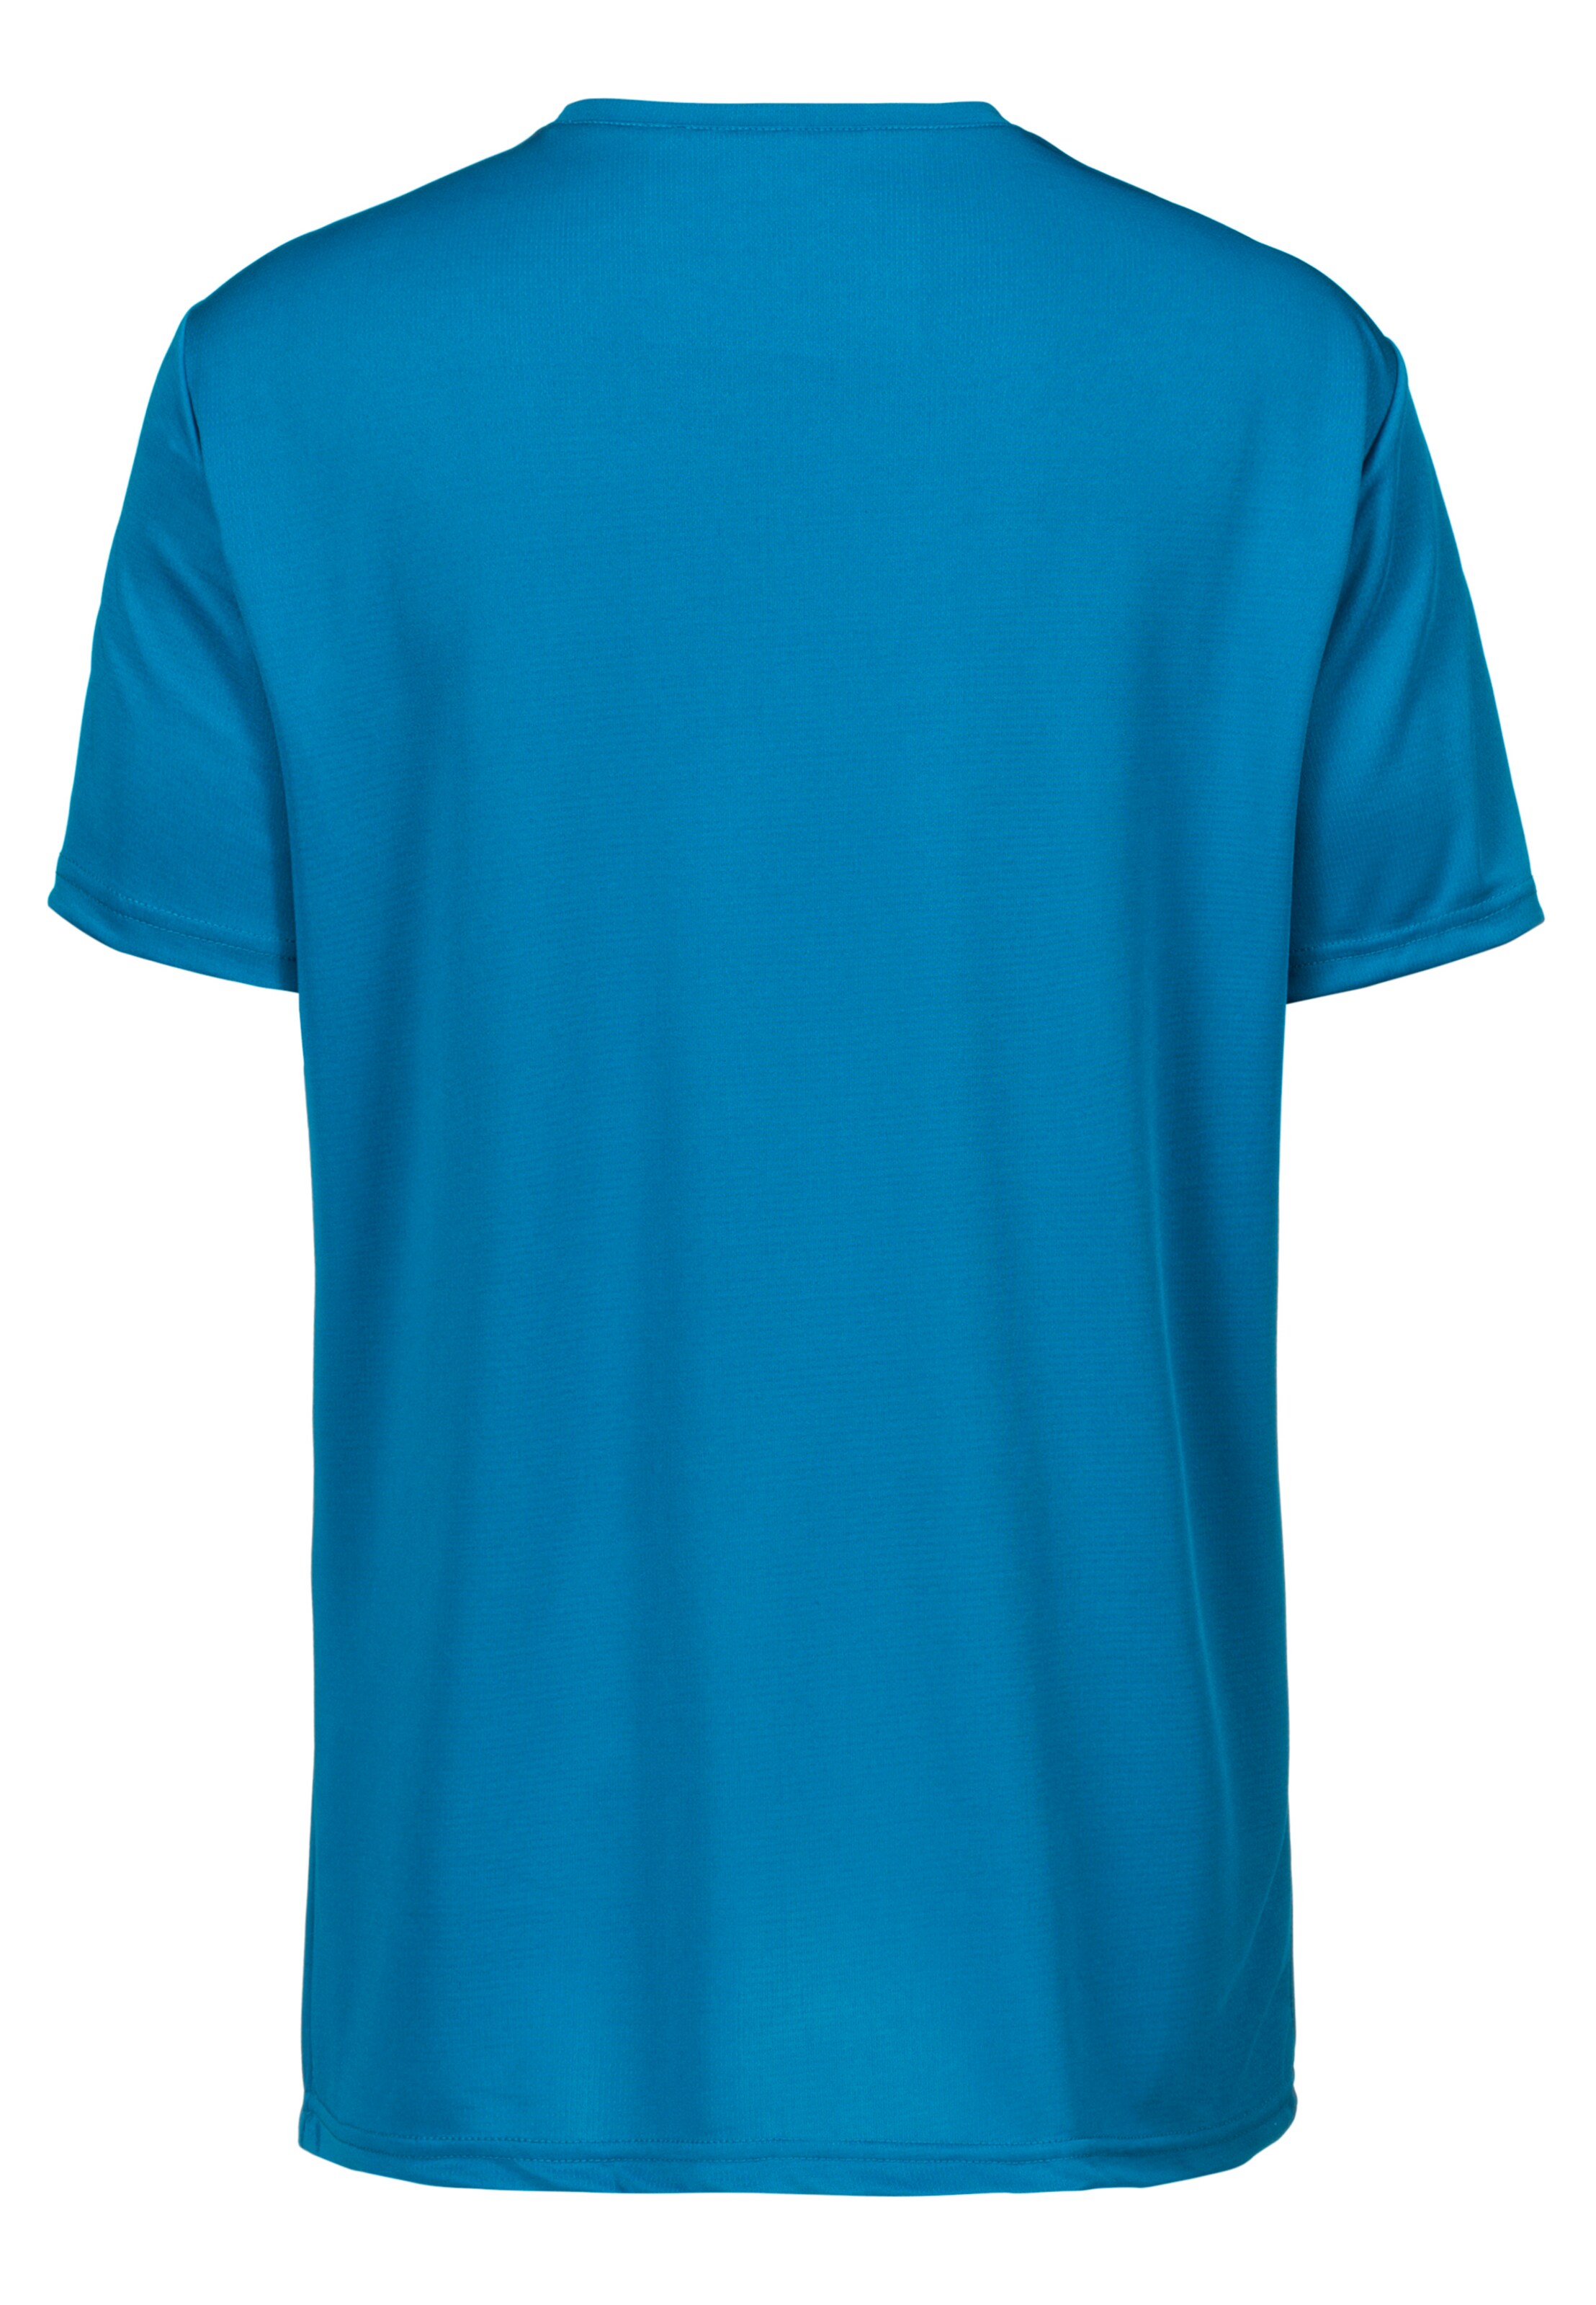 Männer Sportarten ENDURANCE Funktionsshirt Vernon mit reflektierendem Print in Blau - BL38123